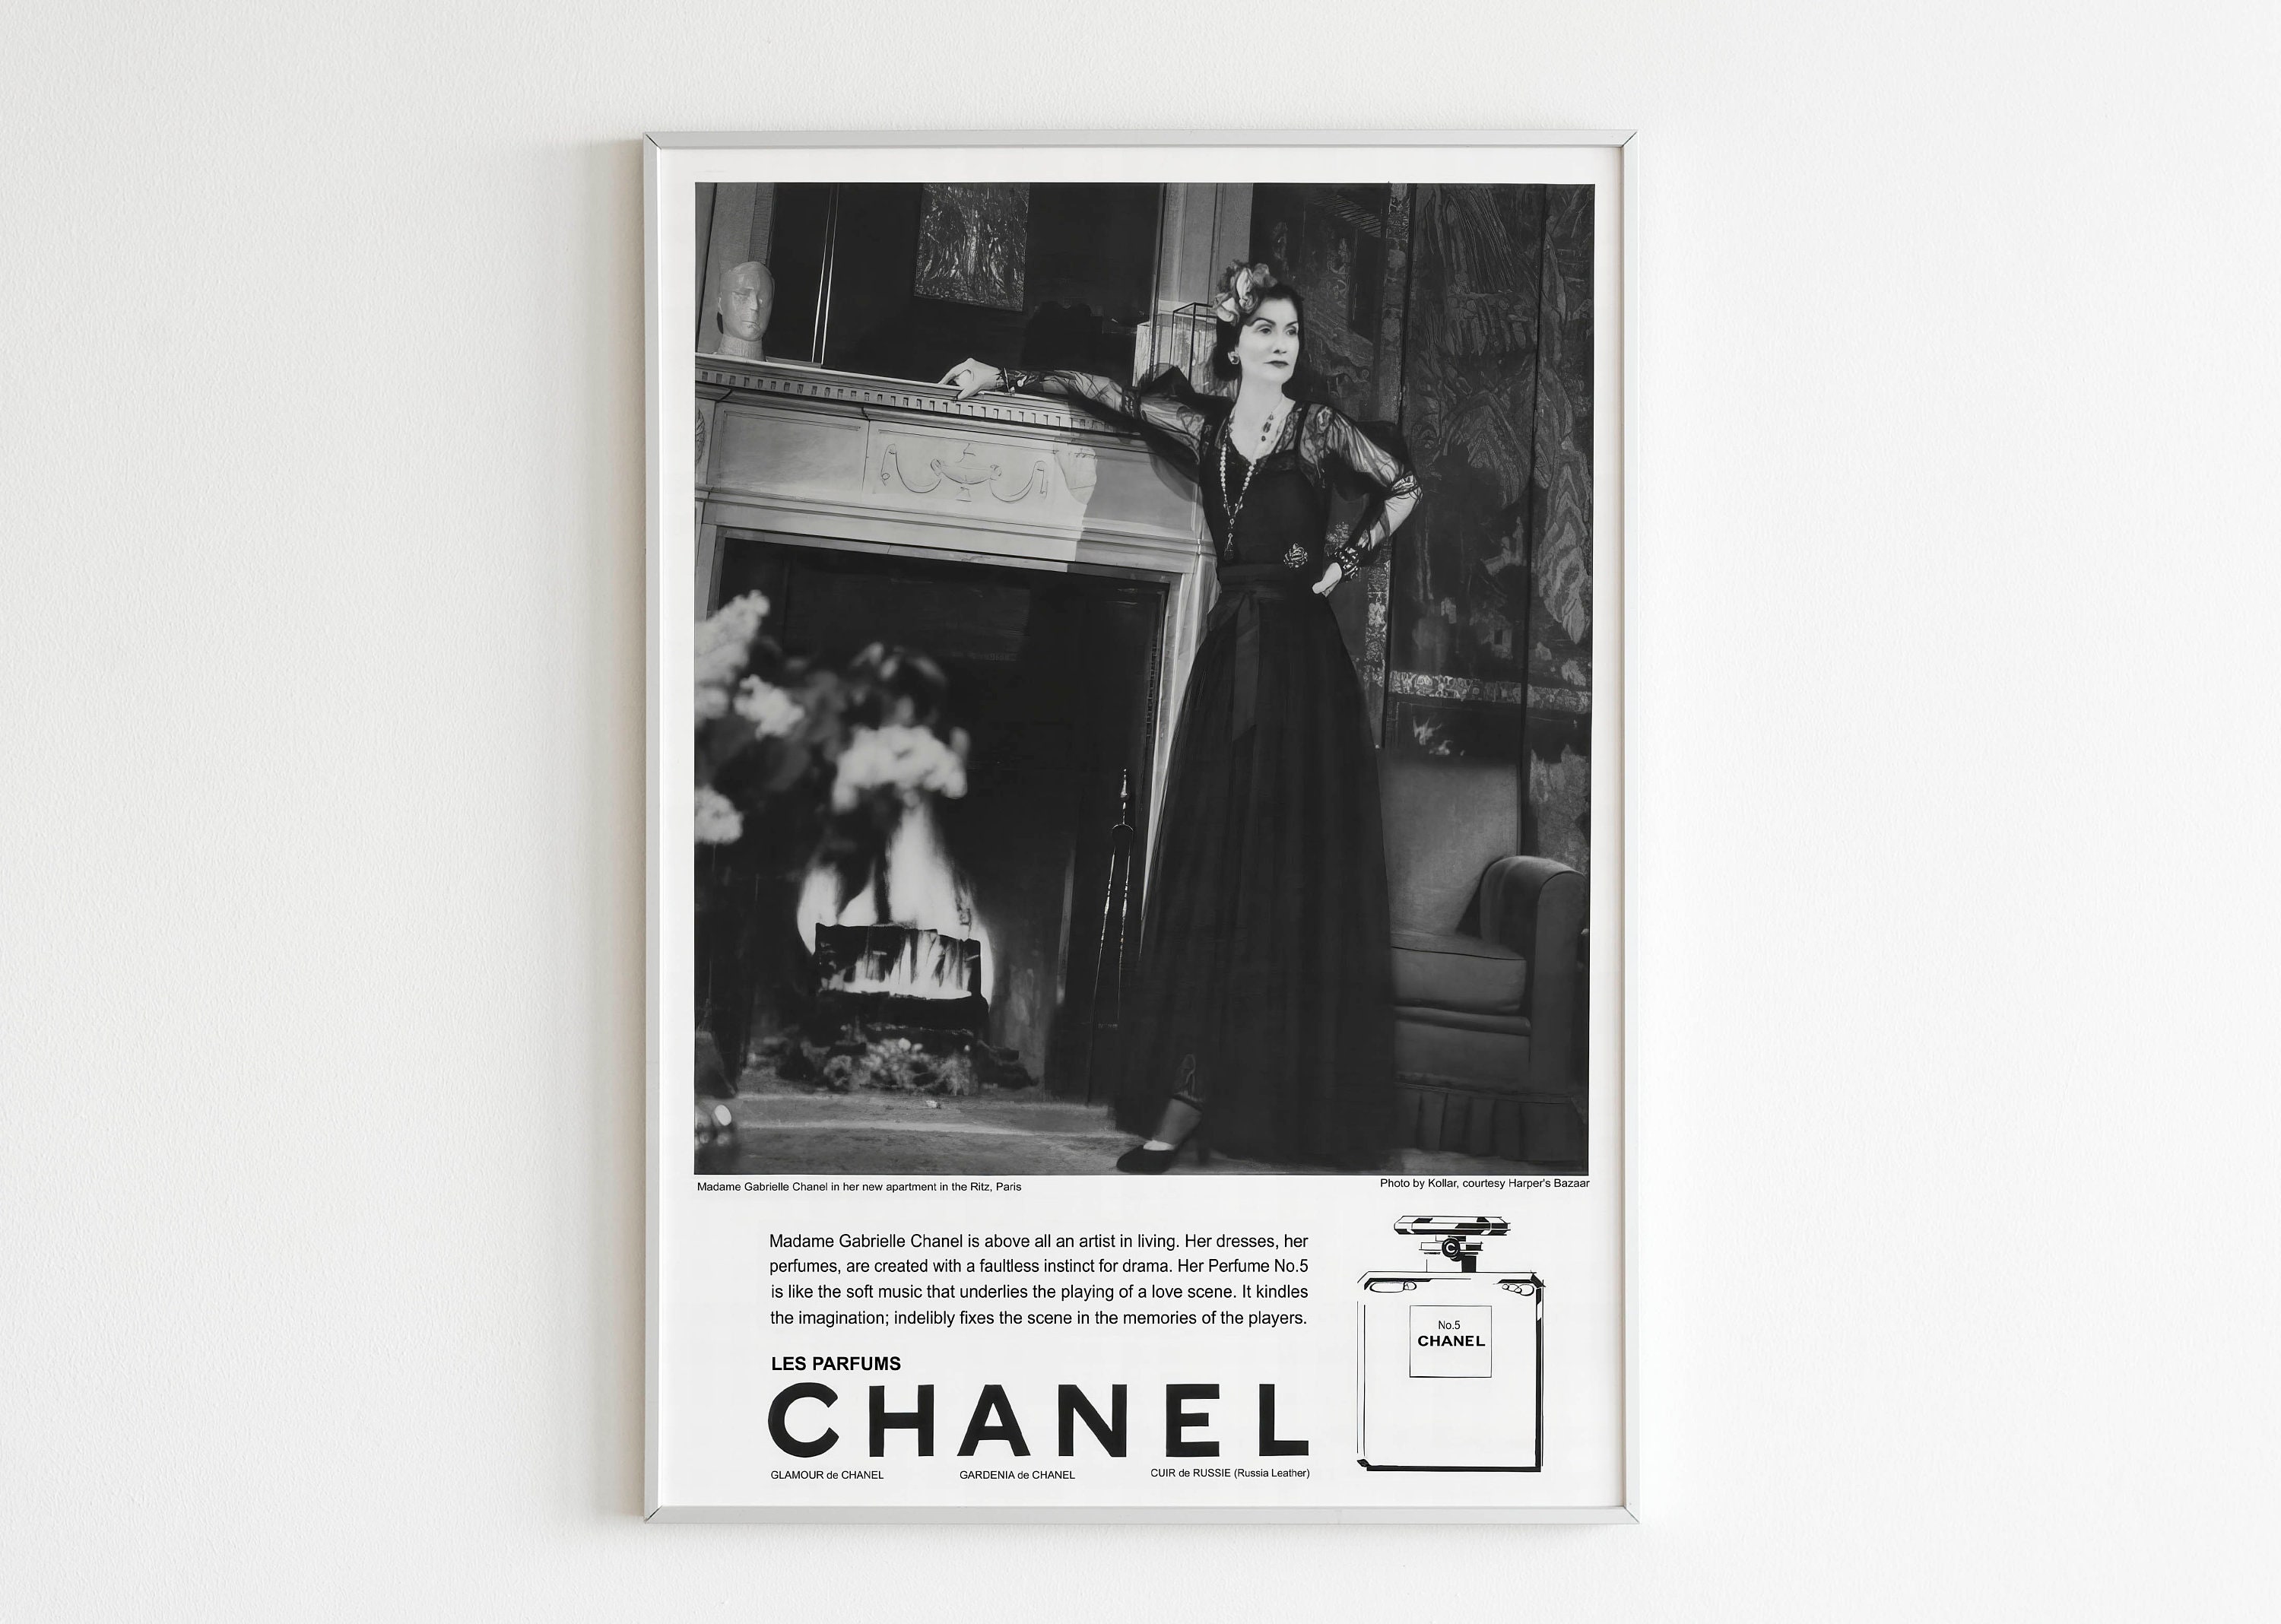 Original poster Chanel no 5 bag spray blue 67 x 47 inches